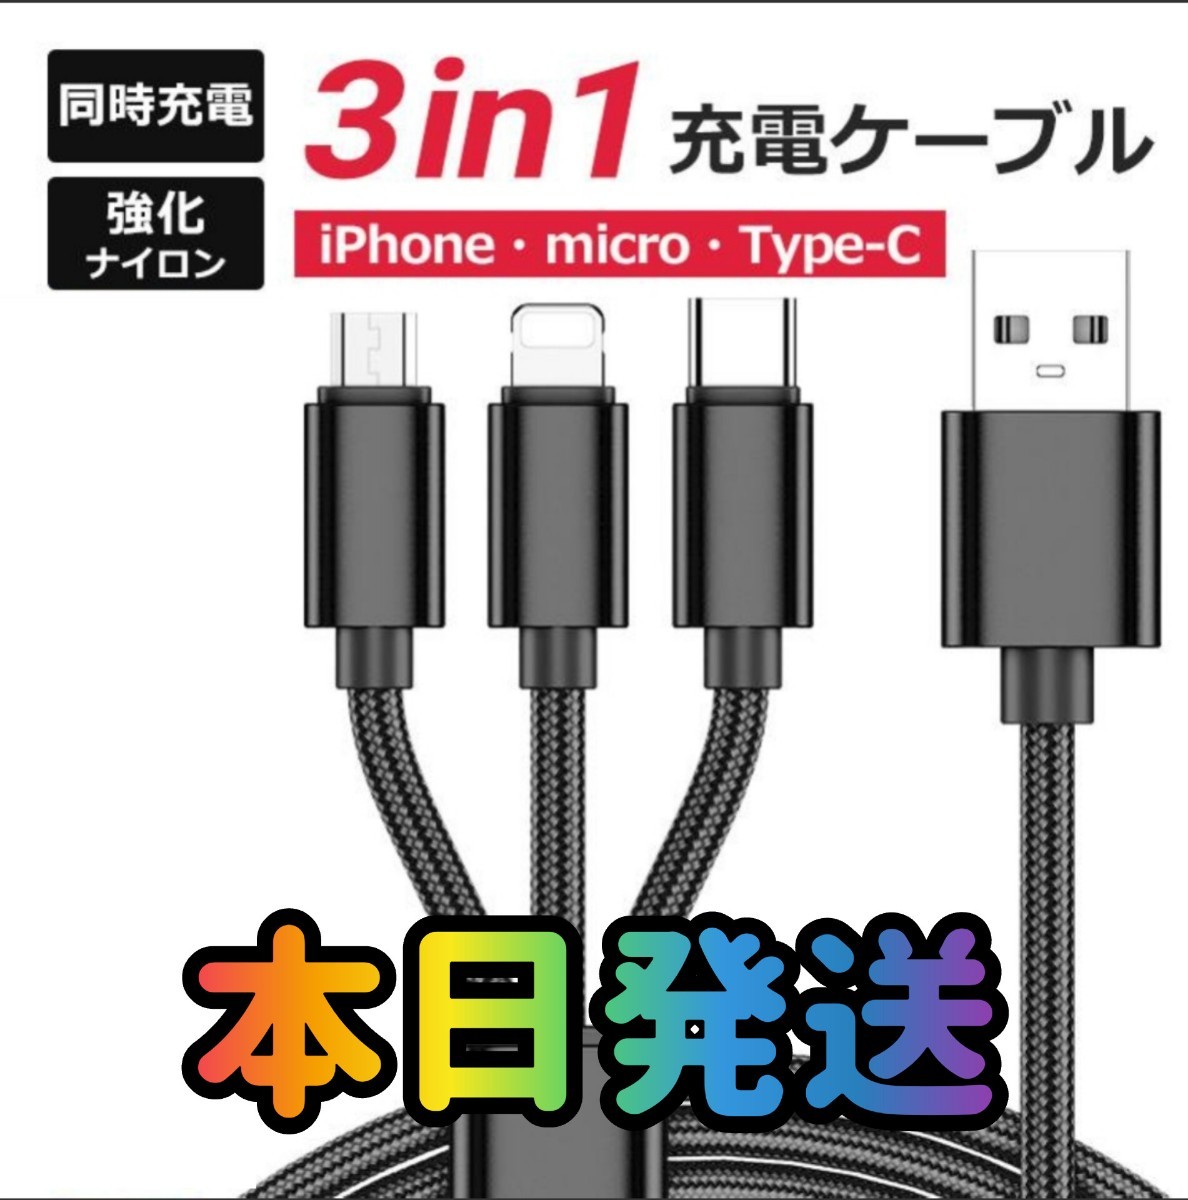 3in1ケーブル ブラック 3in1 巻き取り式 急速充電 Lightning Type-C microUSB 3in1 充電ケーブル ライトニング 充電 USBケーブル